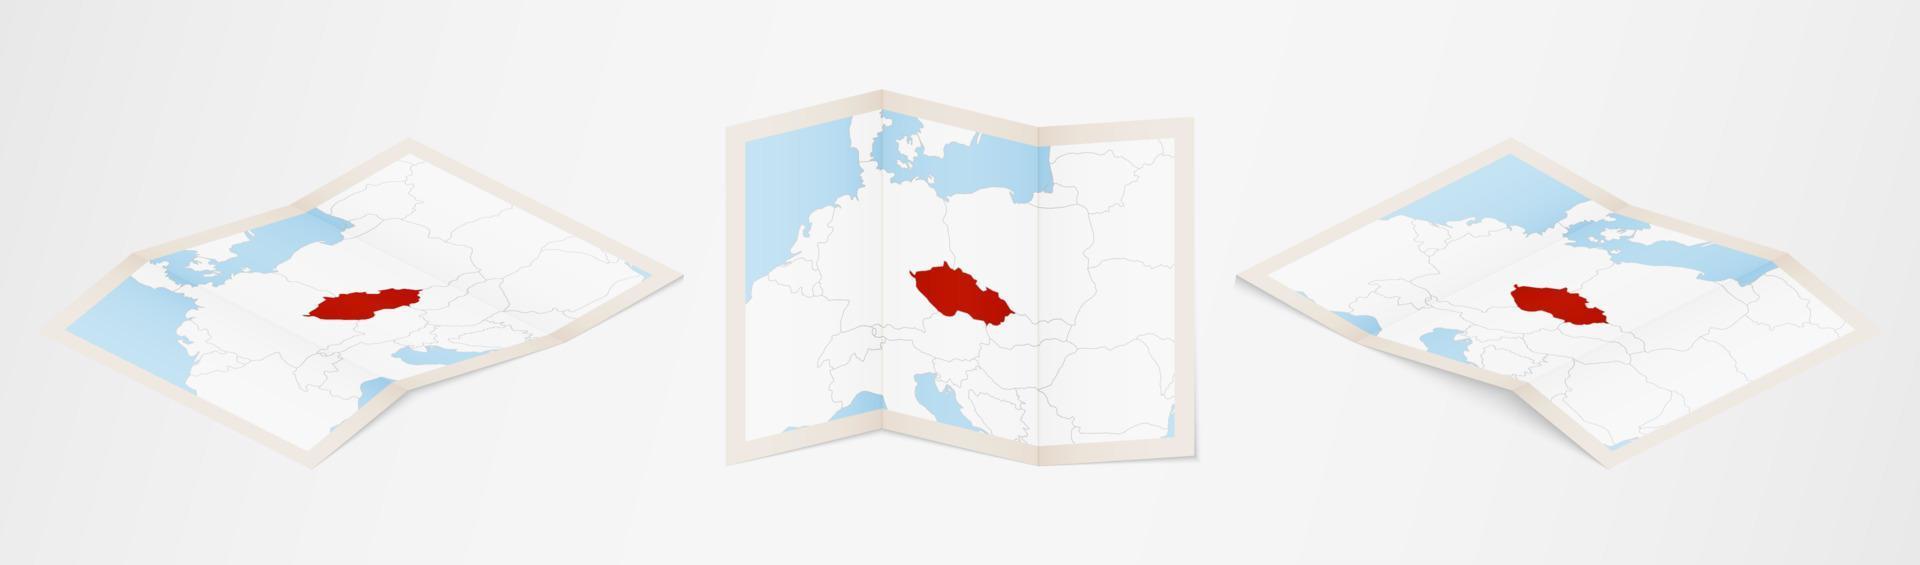 Faltkarte von Tschechien in drei verschiedenen Versionen. vektor